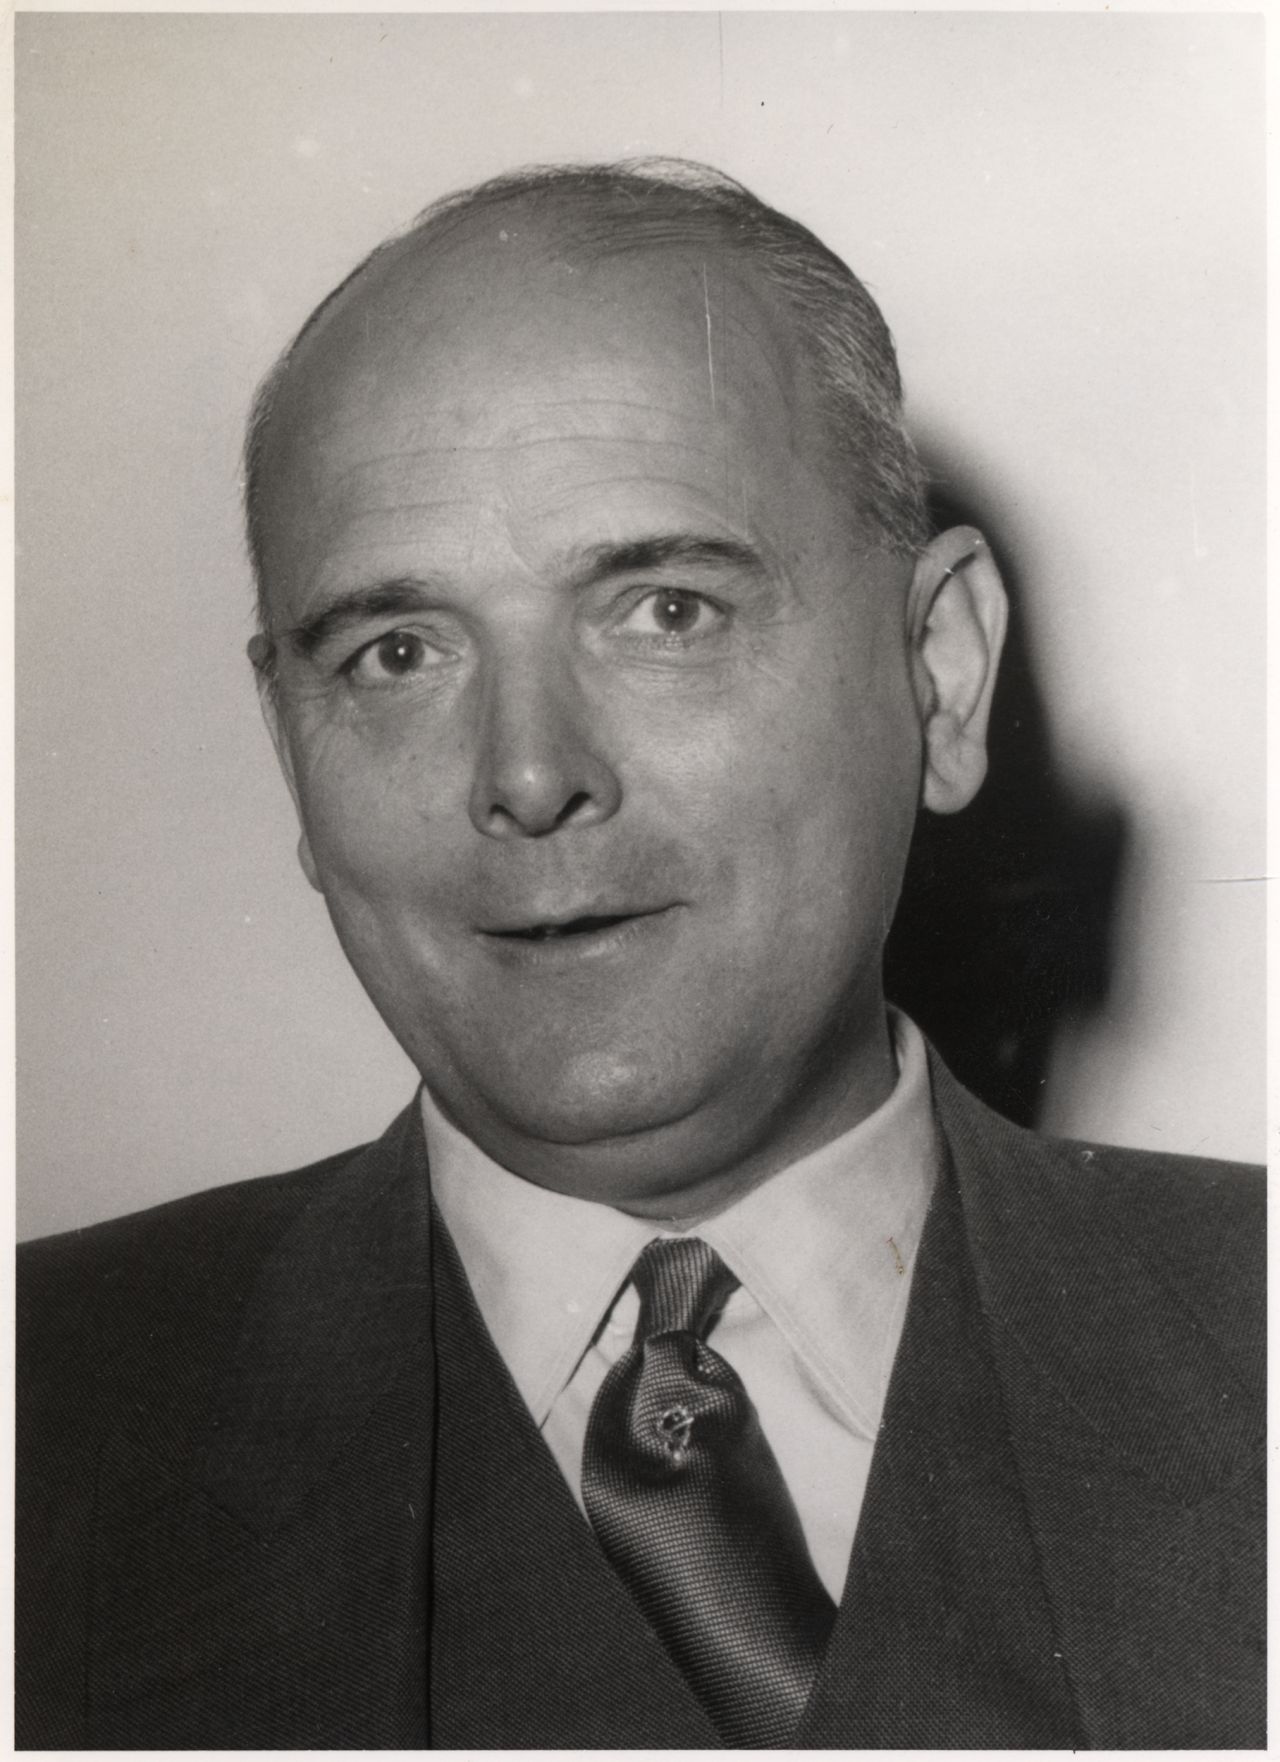 Porträtfotografie von Franz-Josef Wuermeling, Bundesminister für Familienfragen (1953-1962)